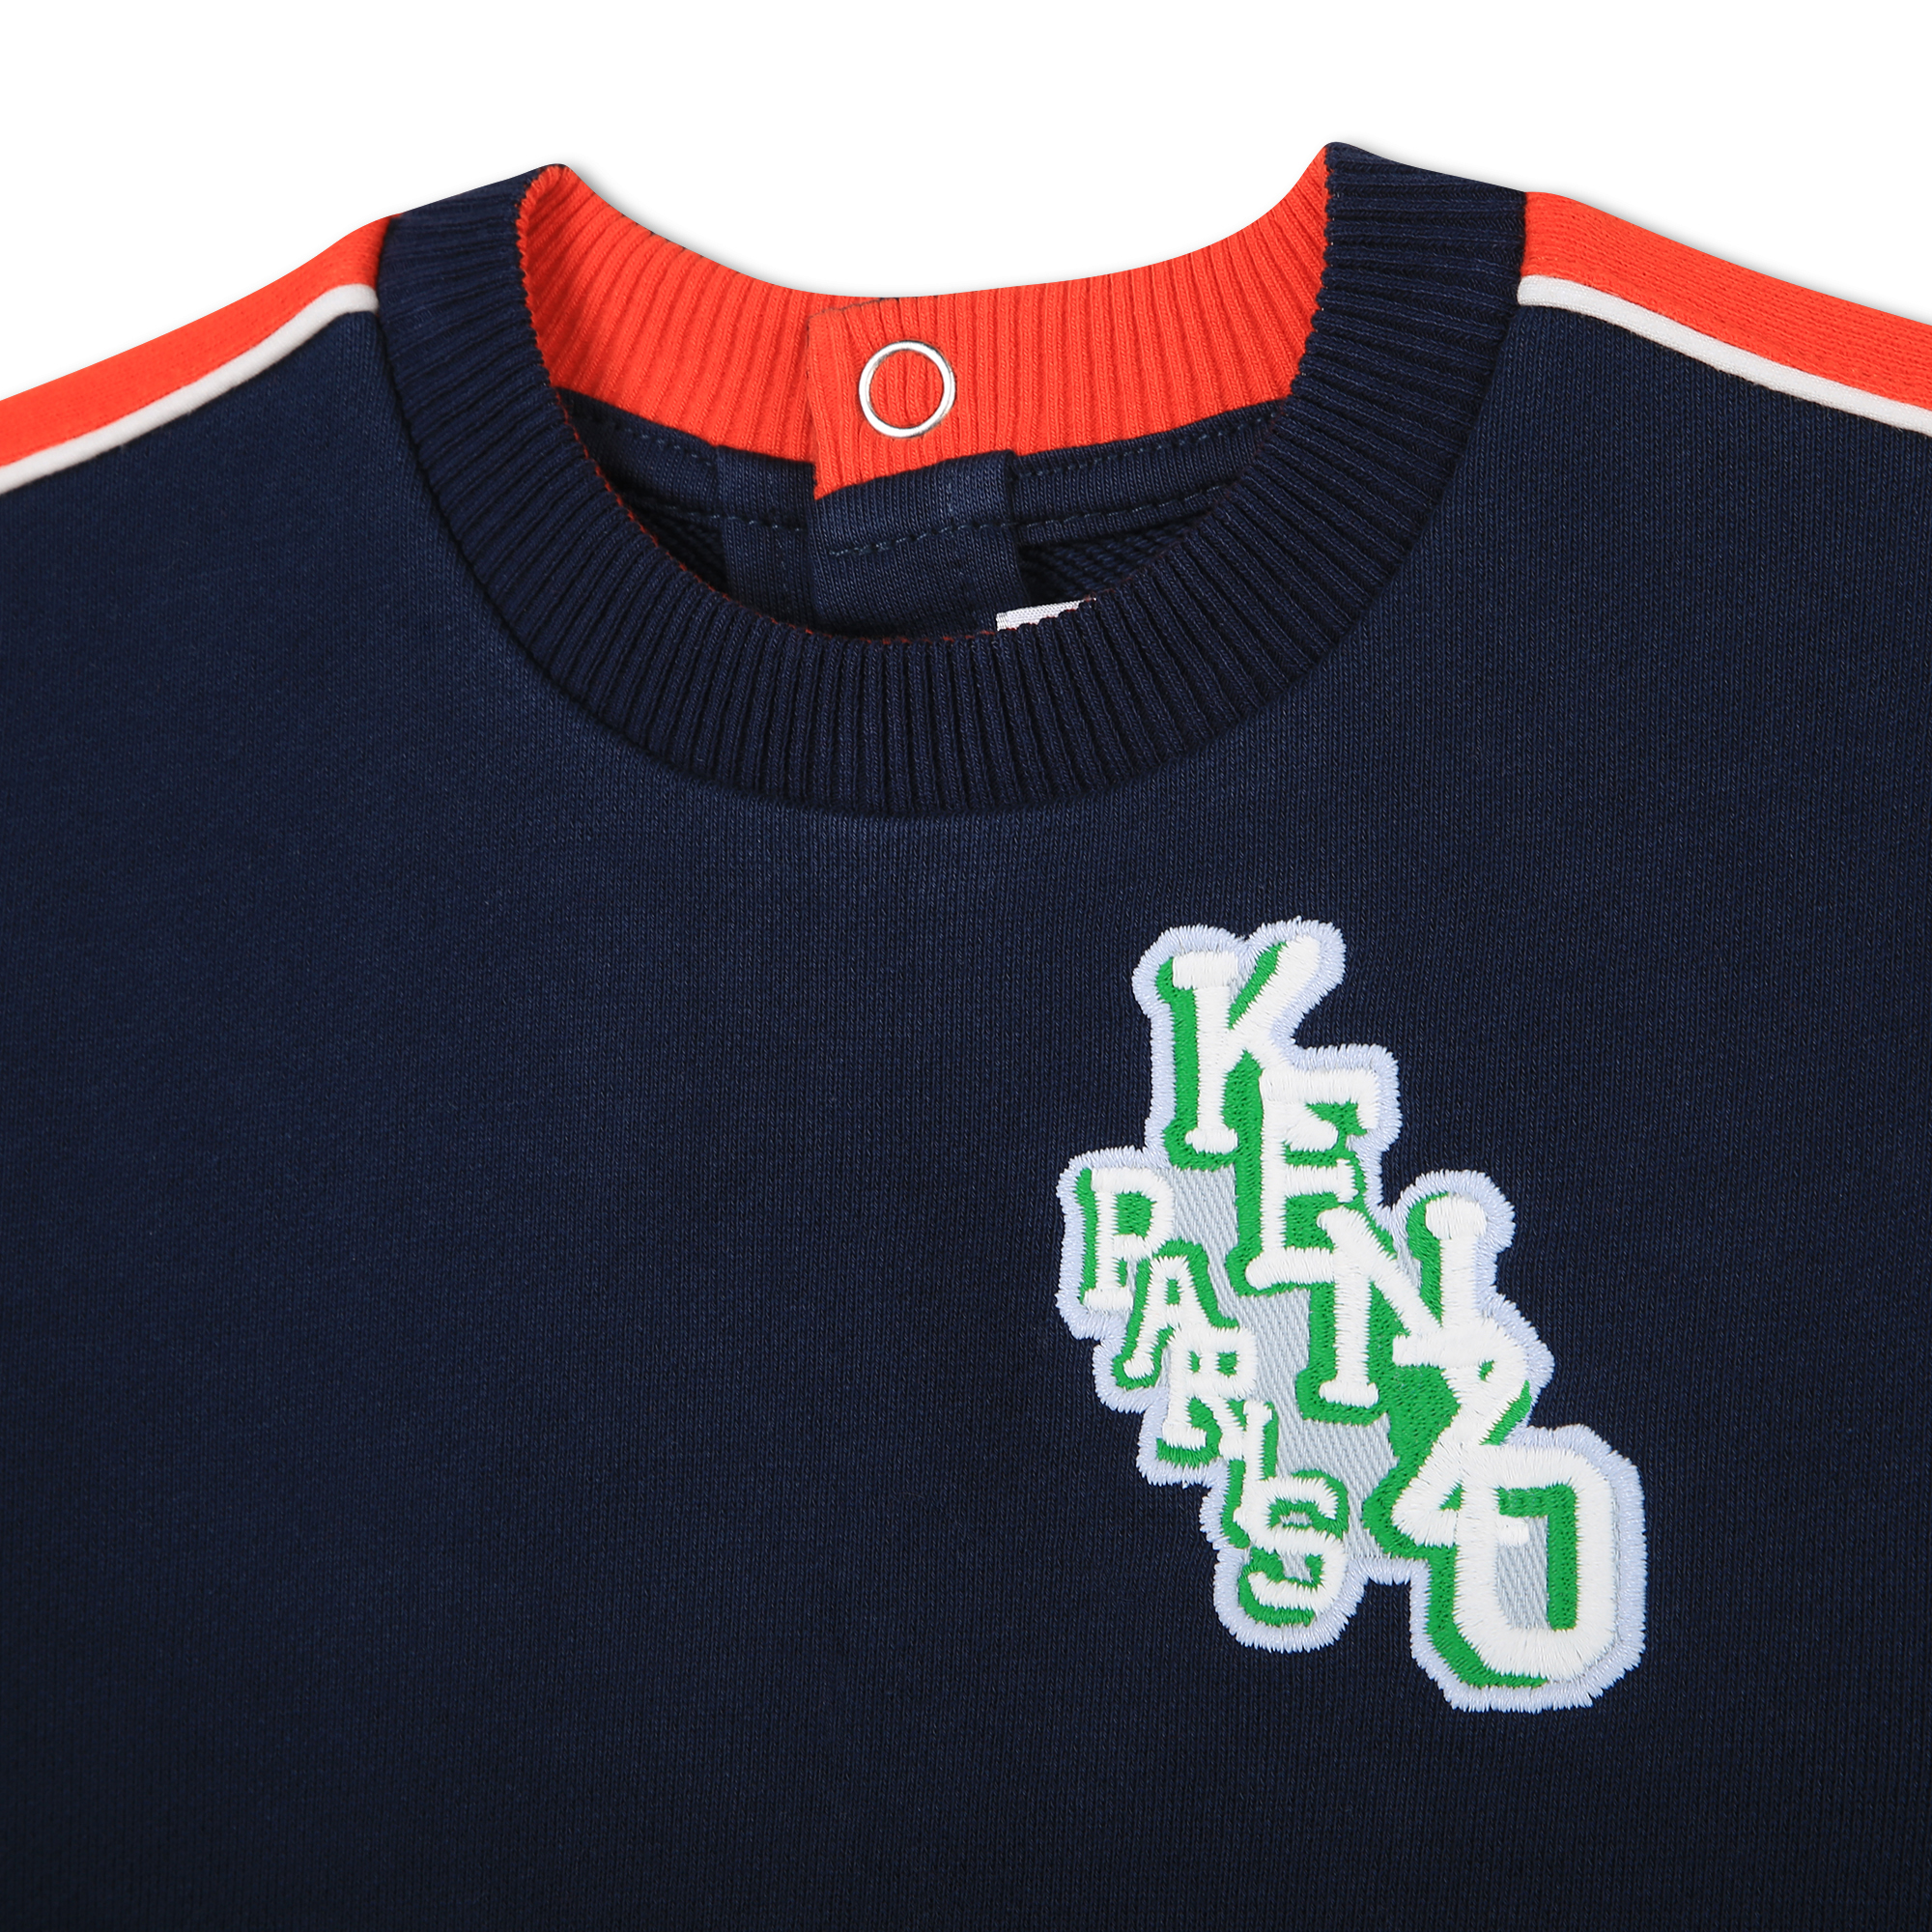 Sweatshirt with embroidery KENZO KIDS for BOY